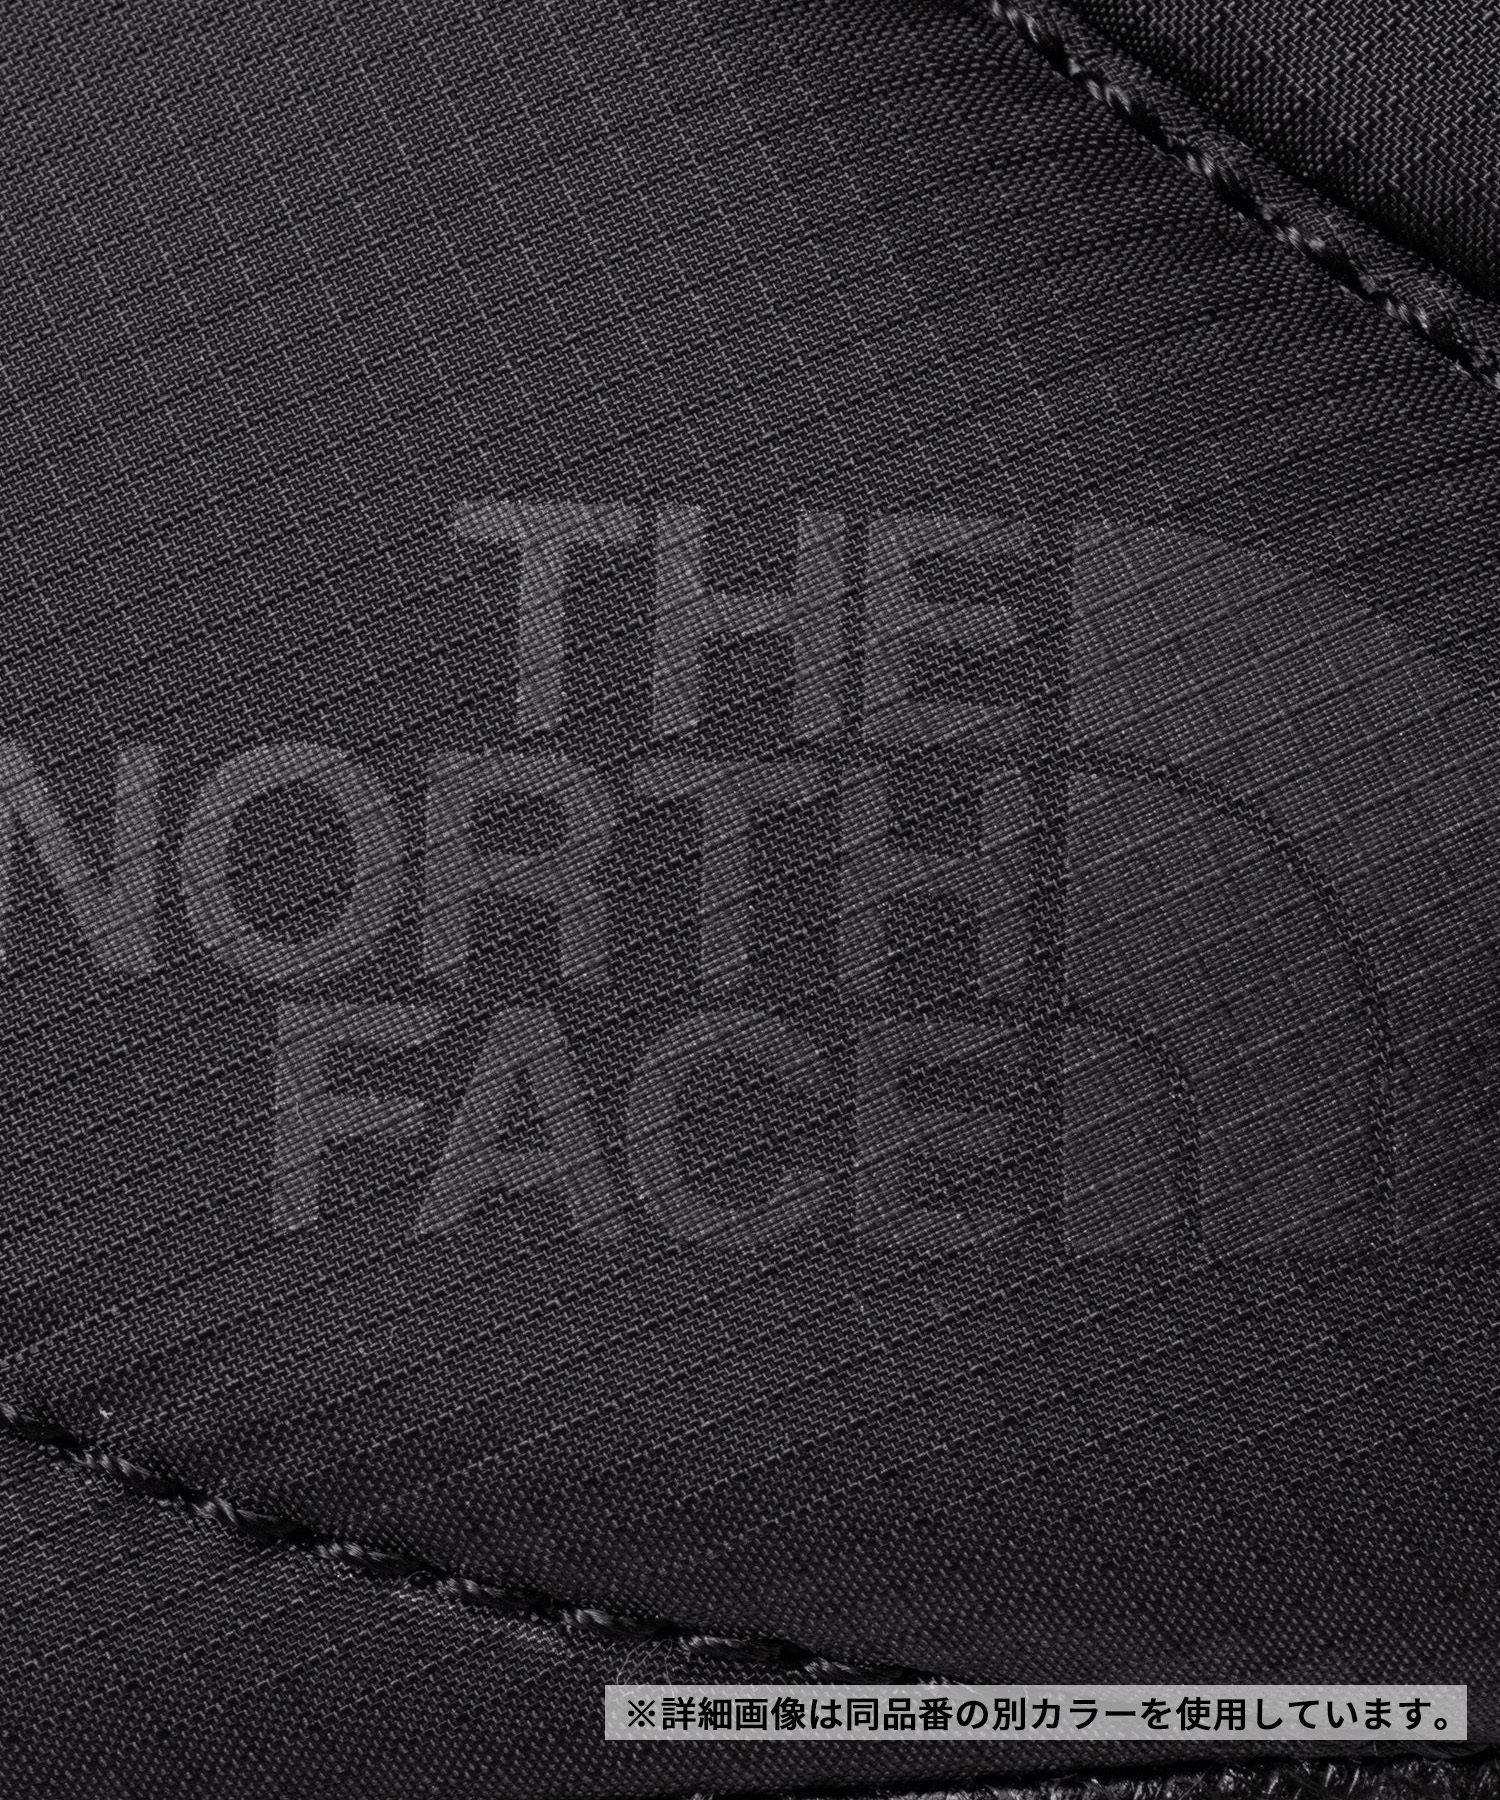 THE NORTH FACE/ザ・ノース・フェイス ヌプシ ブーティ ウォータープルーフ VII ショート レディース ブーツ NF52273 FK(FK-23.0cm)